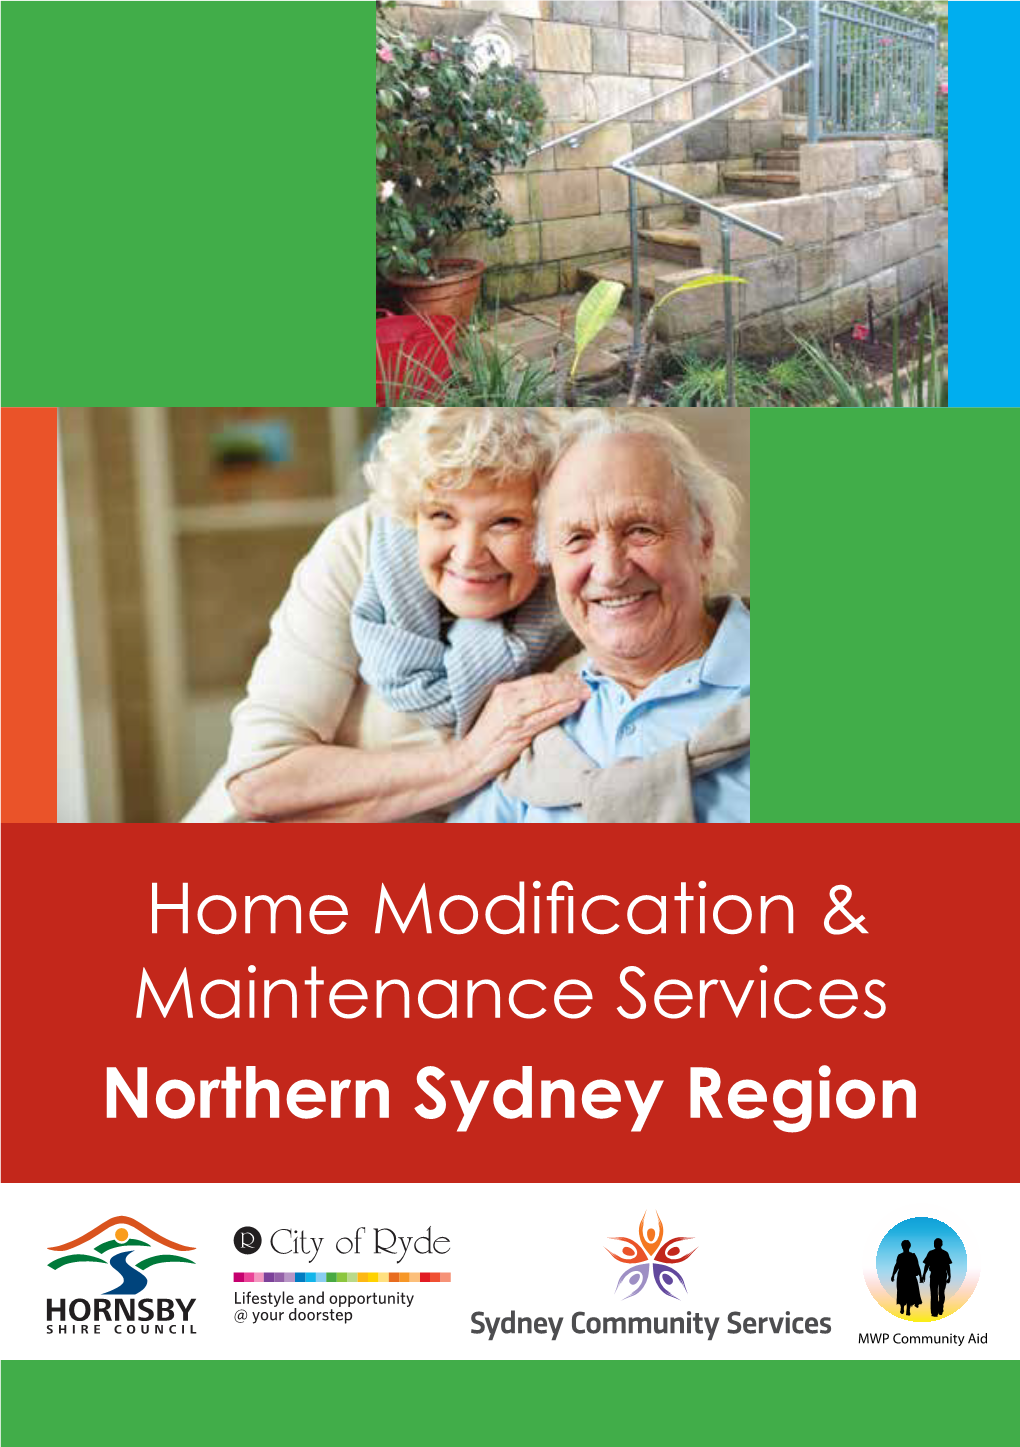 Northern Sydney Region Maintenance Services